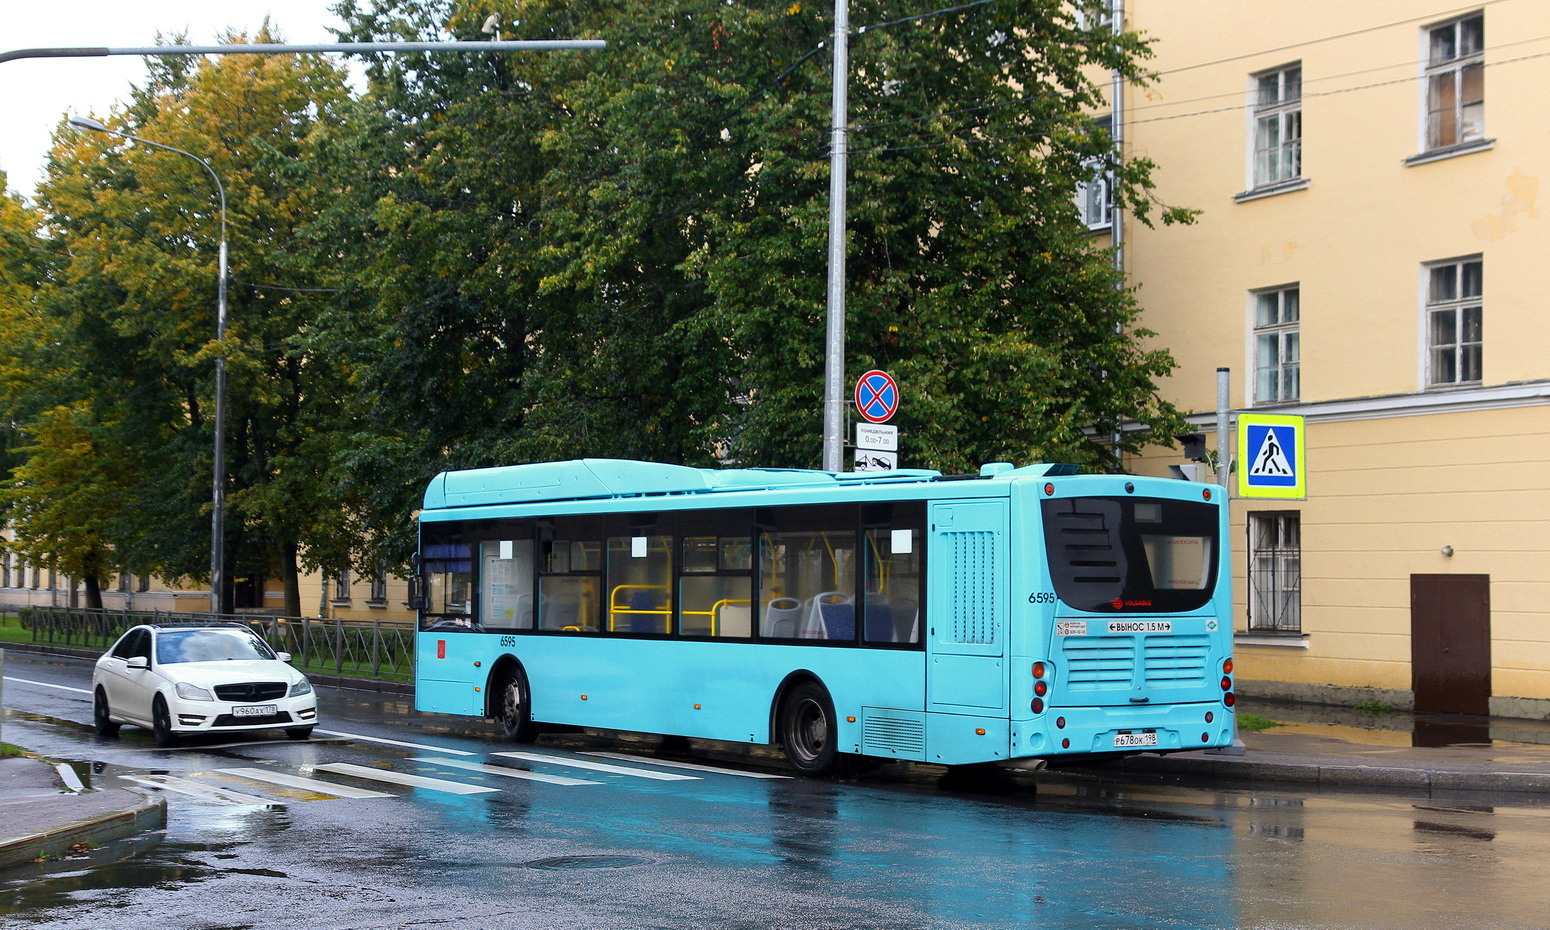 Szentpétervár, Volgabus-5270.G4 (CNG) sz.: 6595